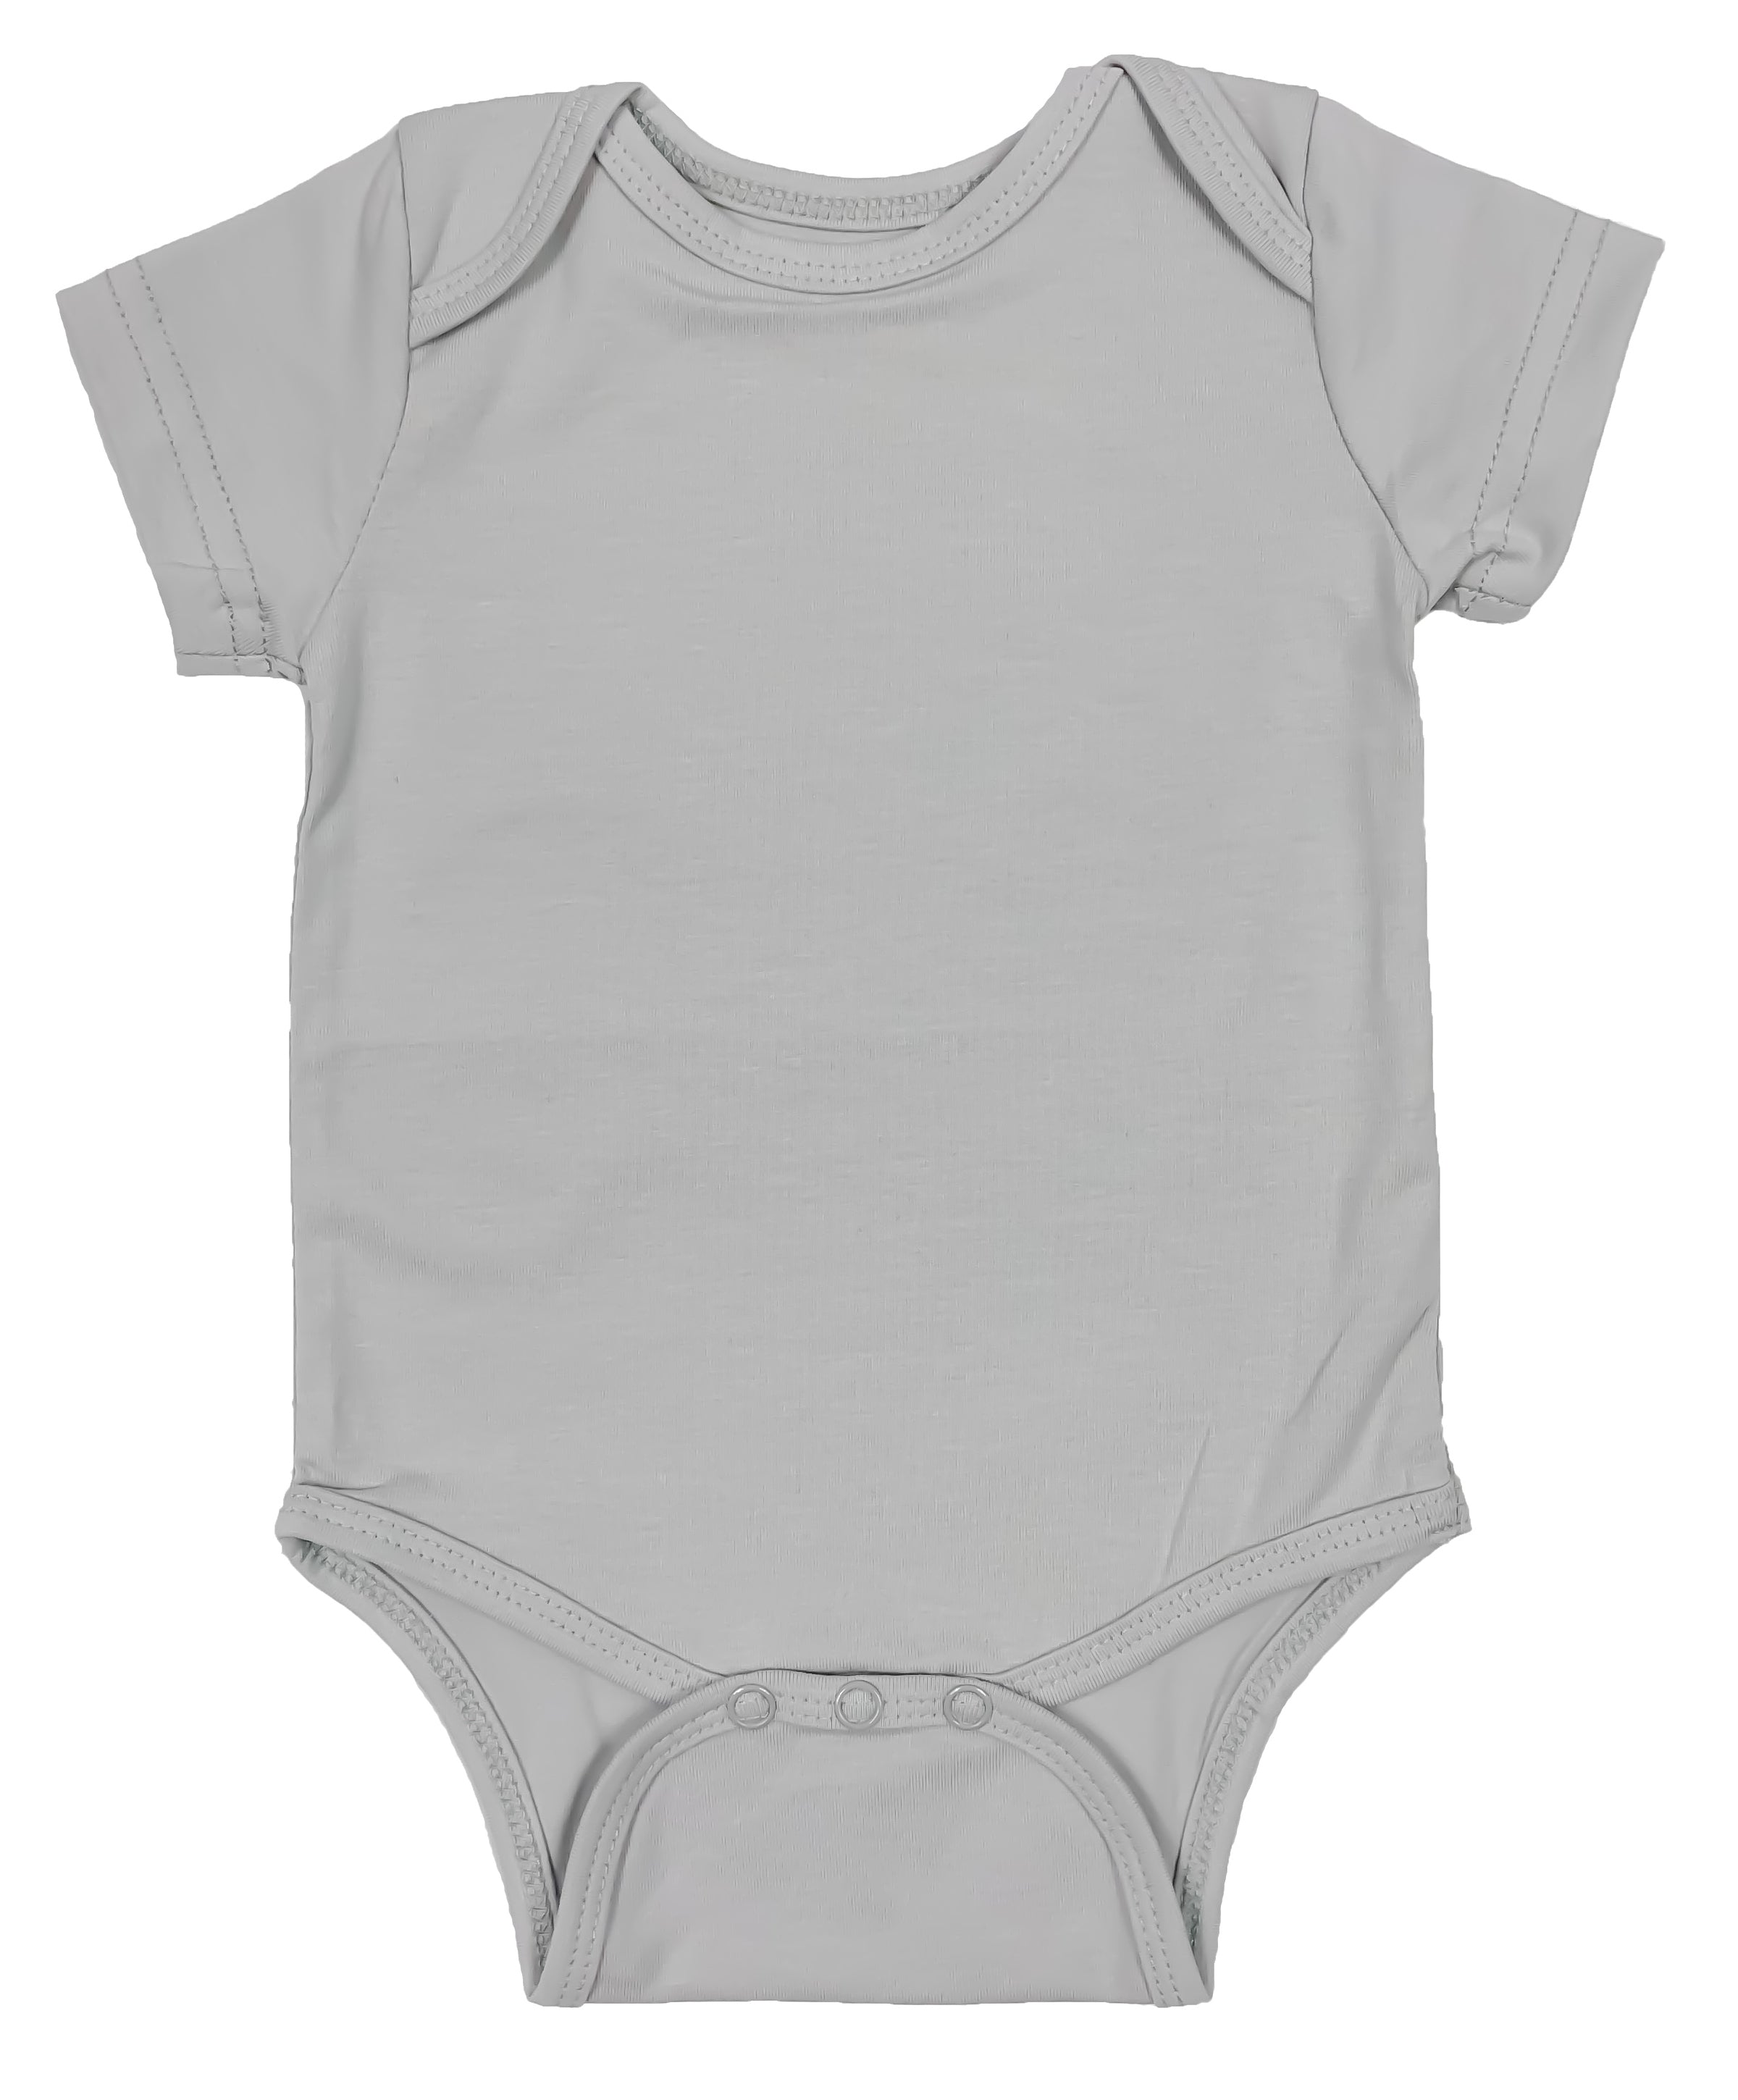 baby boy onesie designs